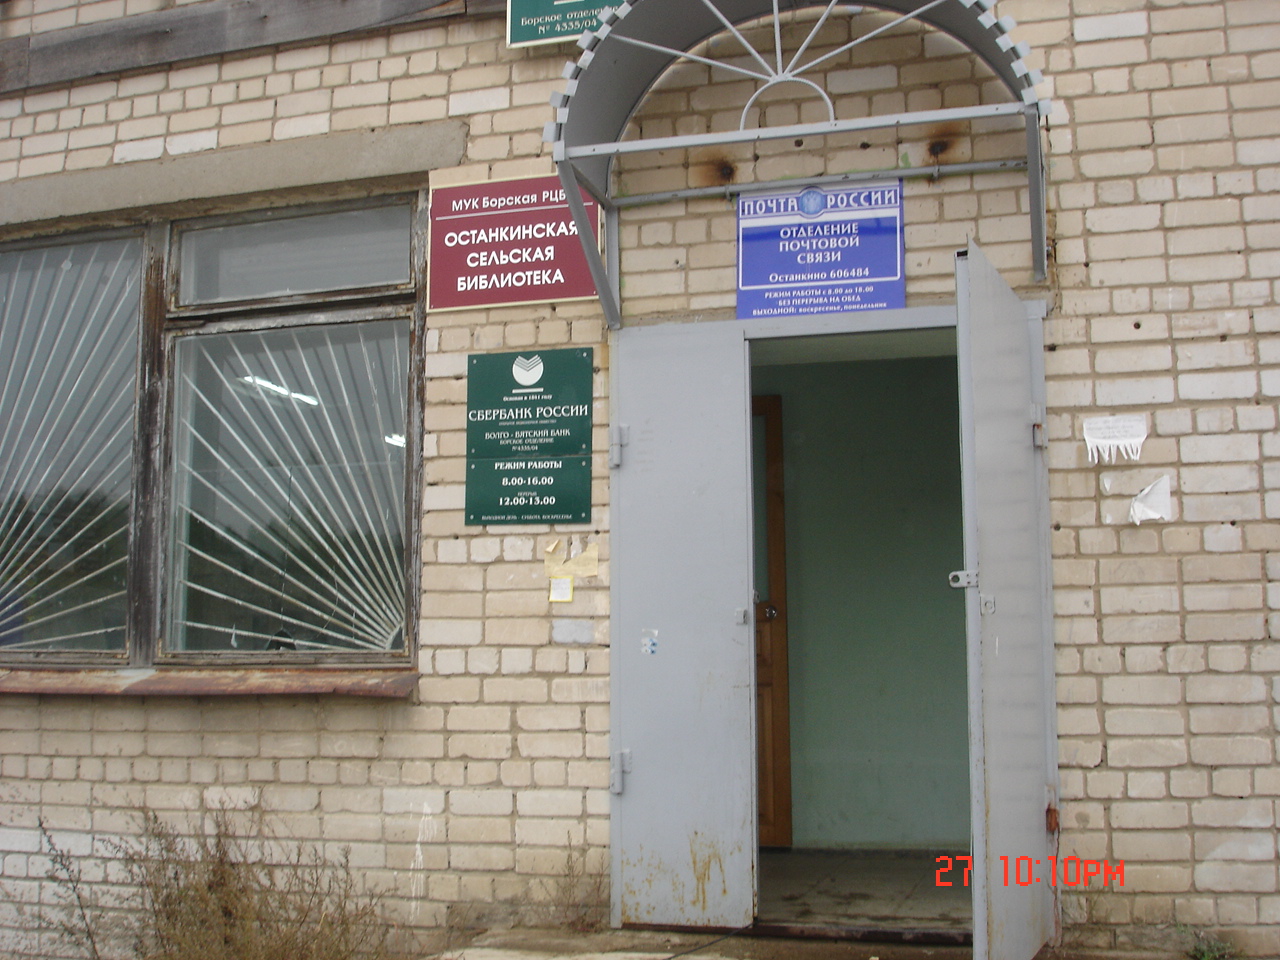 ВХОД, отделение почтовой связи 606484, Нижегородская обл., Борский р-он, Останкино